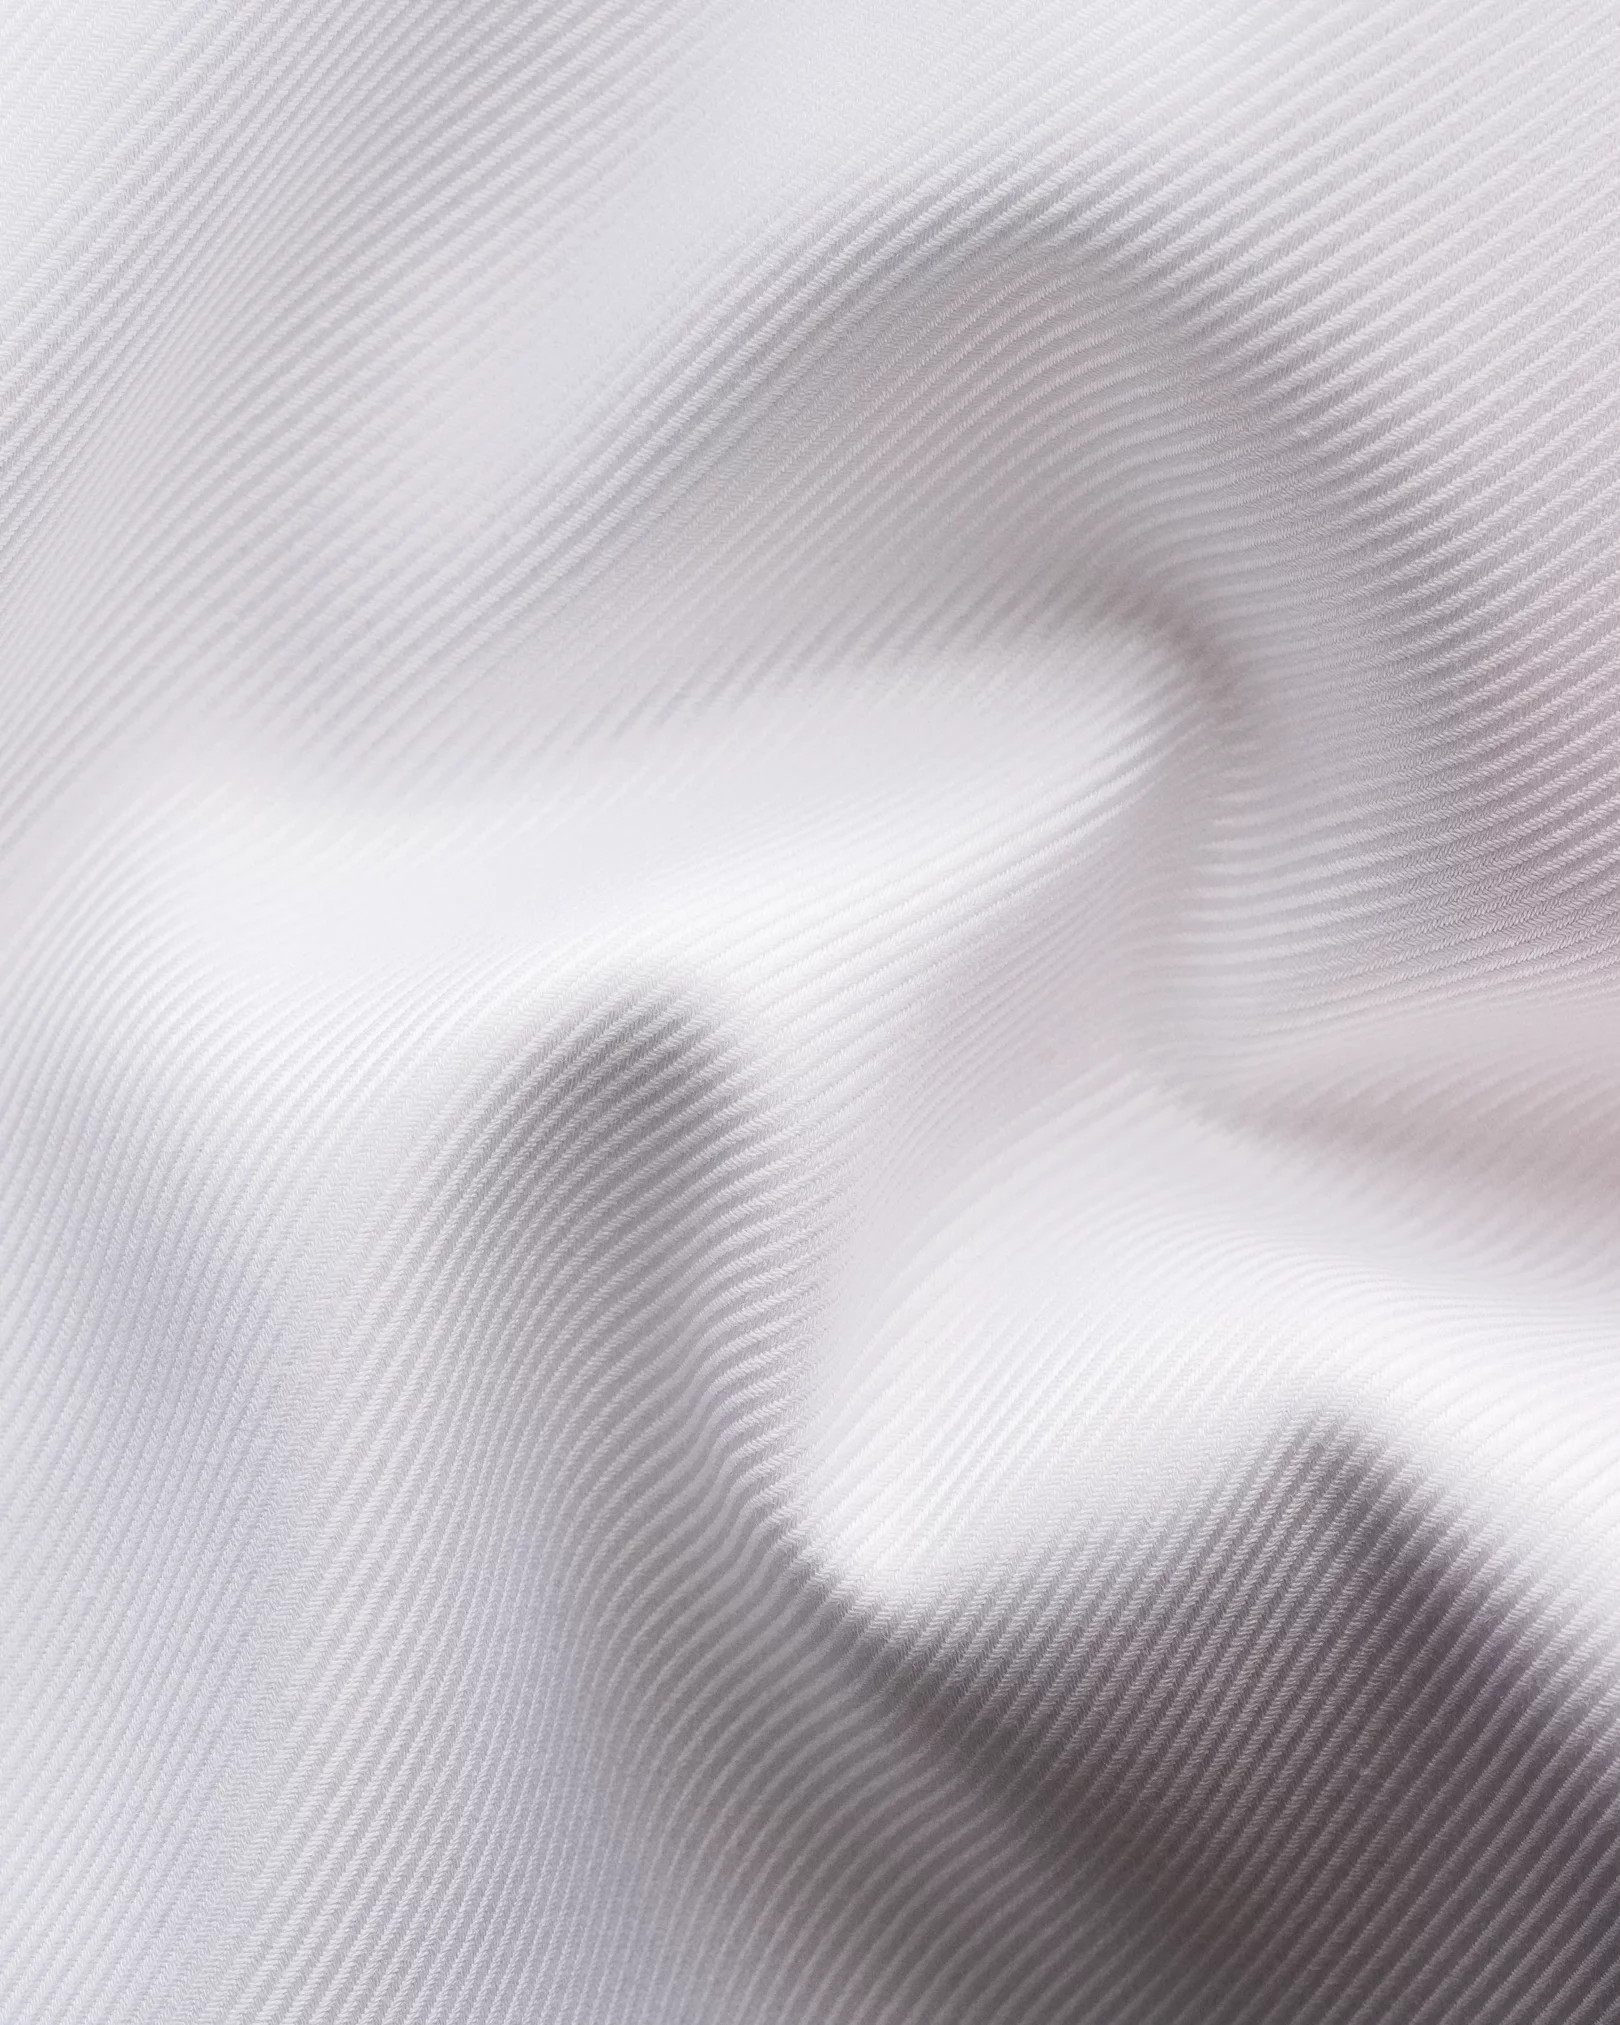 White Pleat Front Textured Twill Tuxedo Shirt - Eton